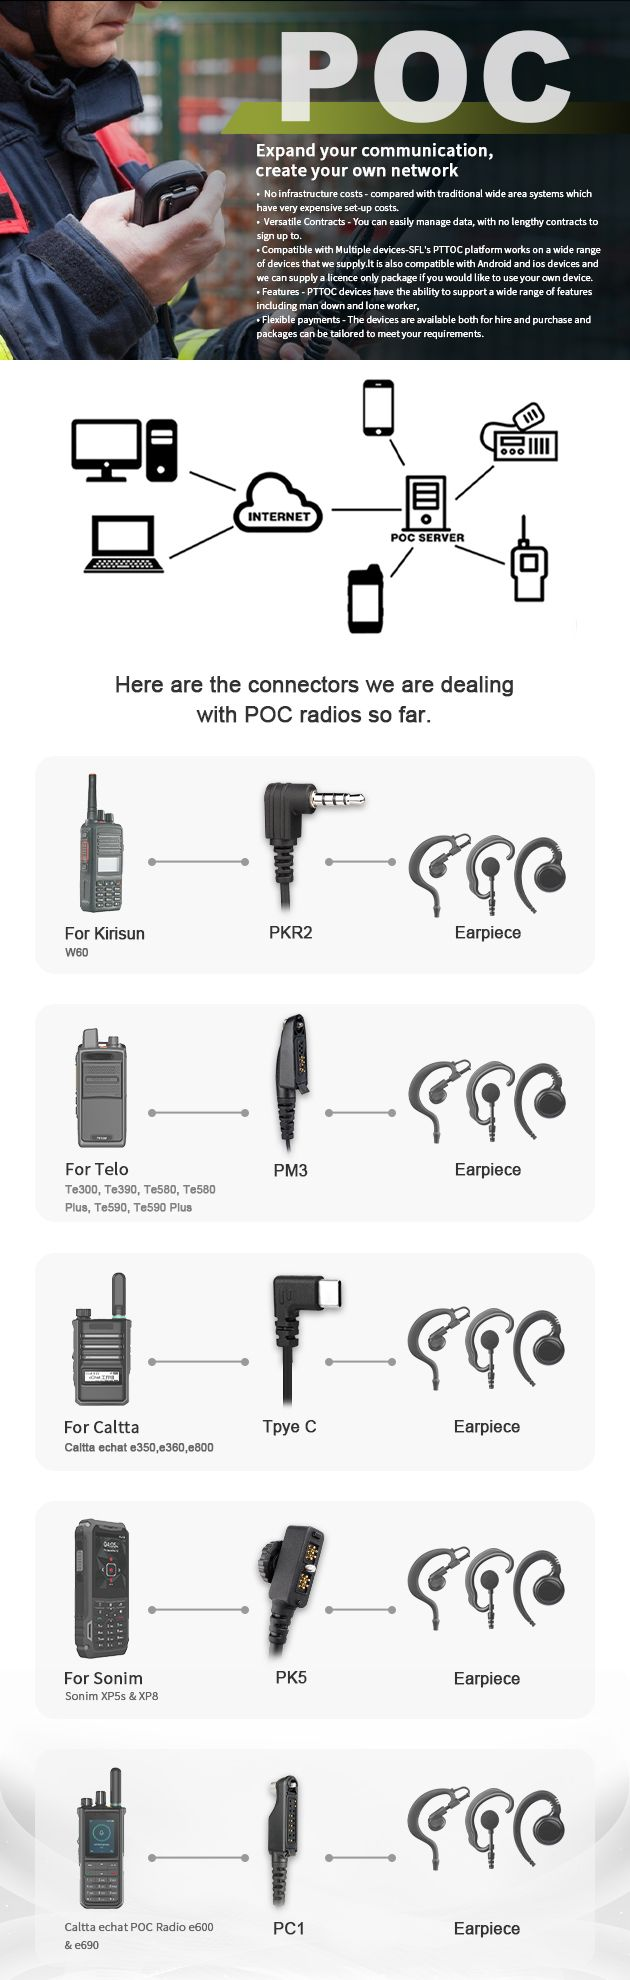 Why PoC Radios?